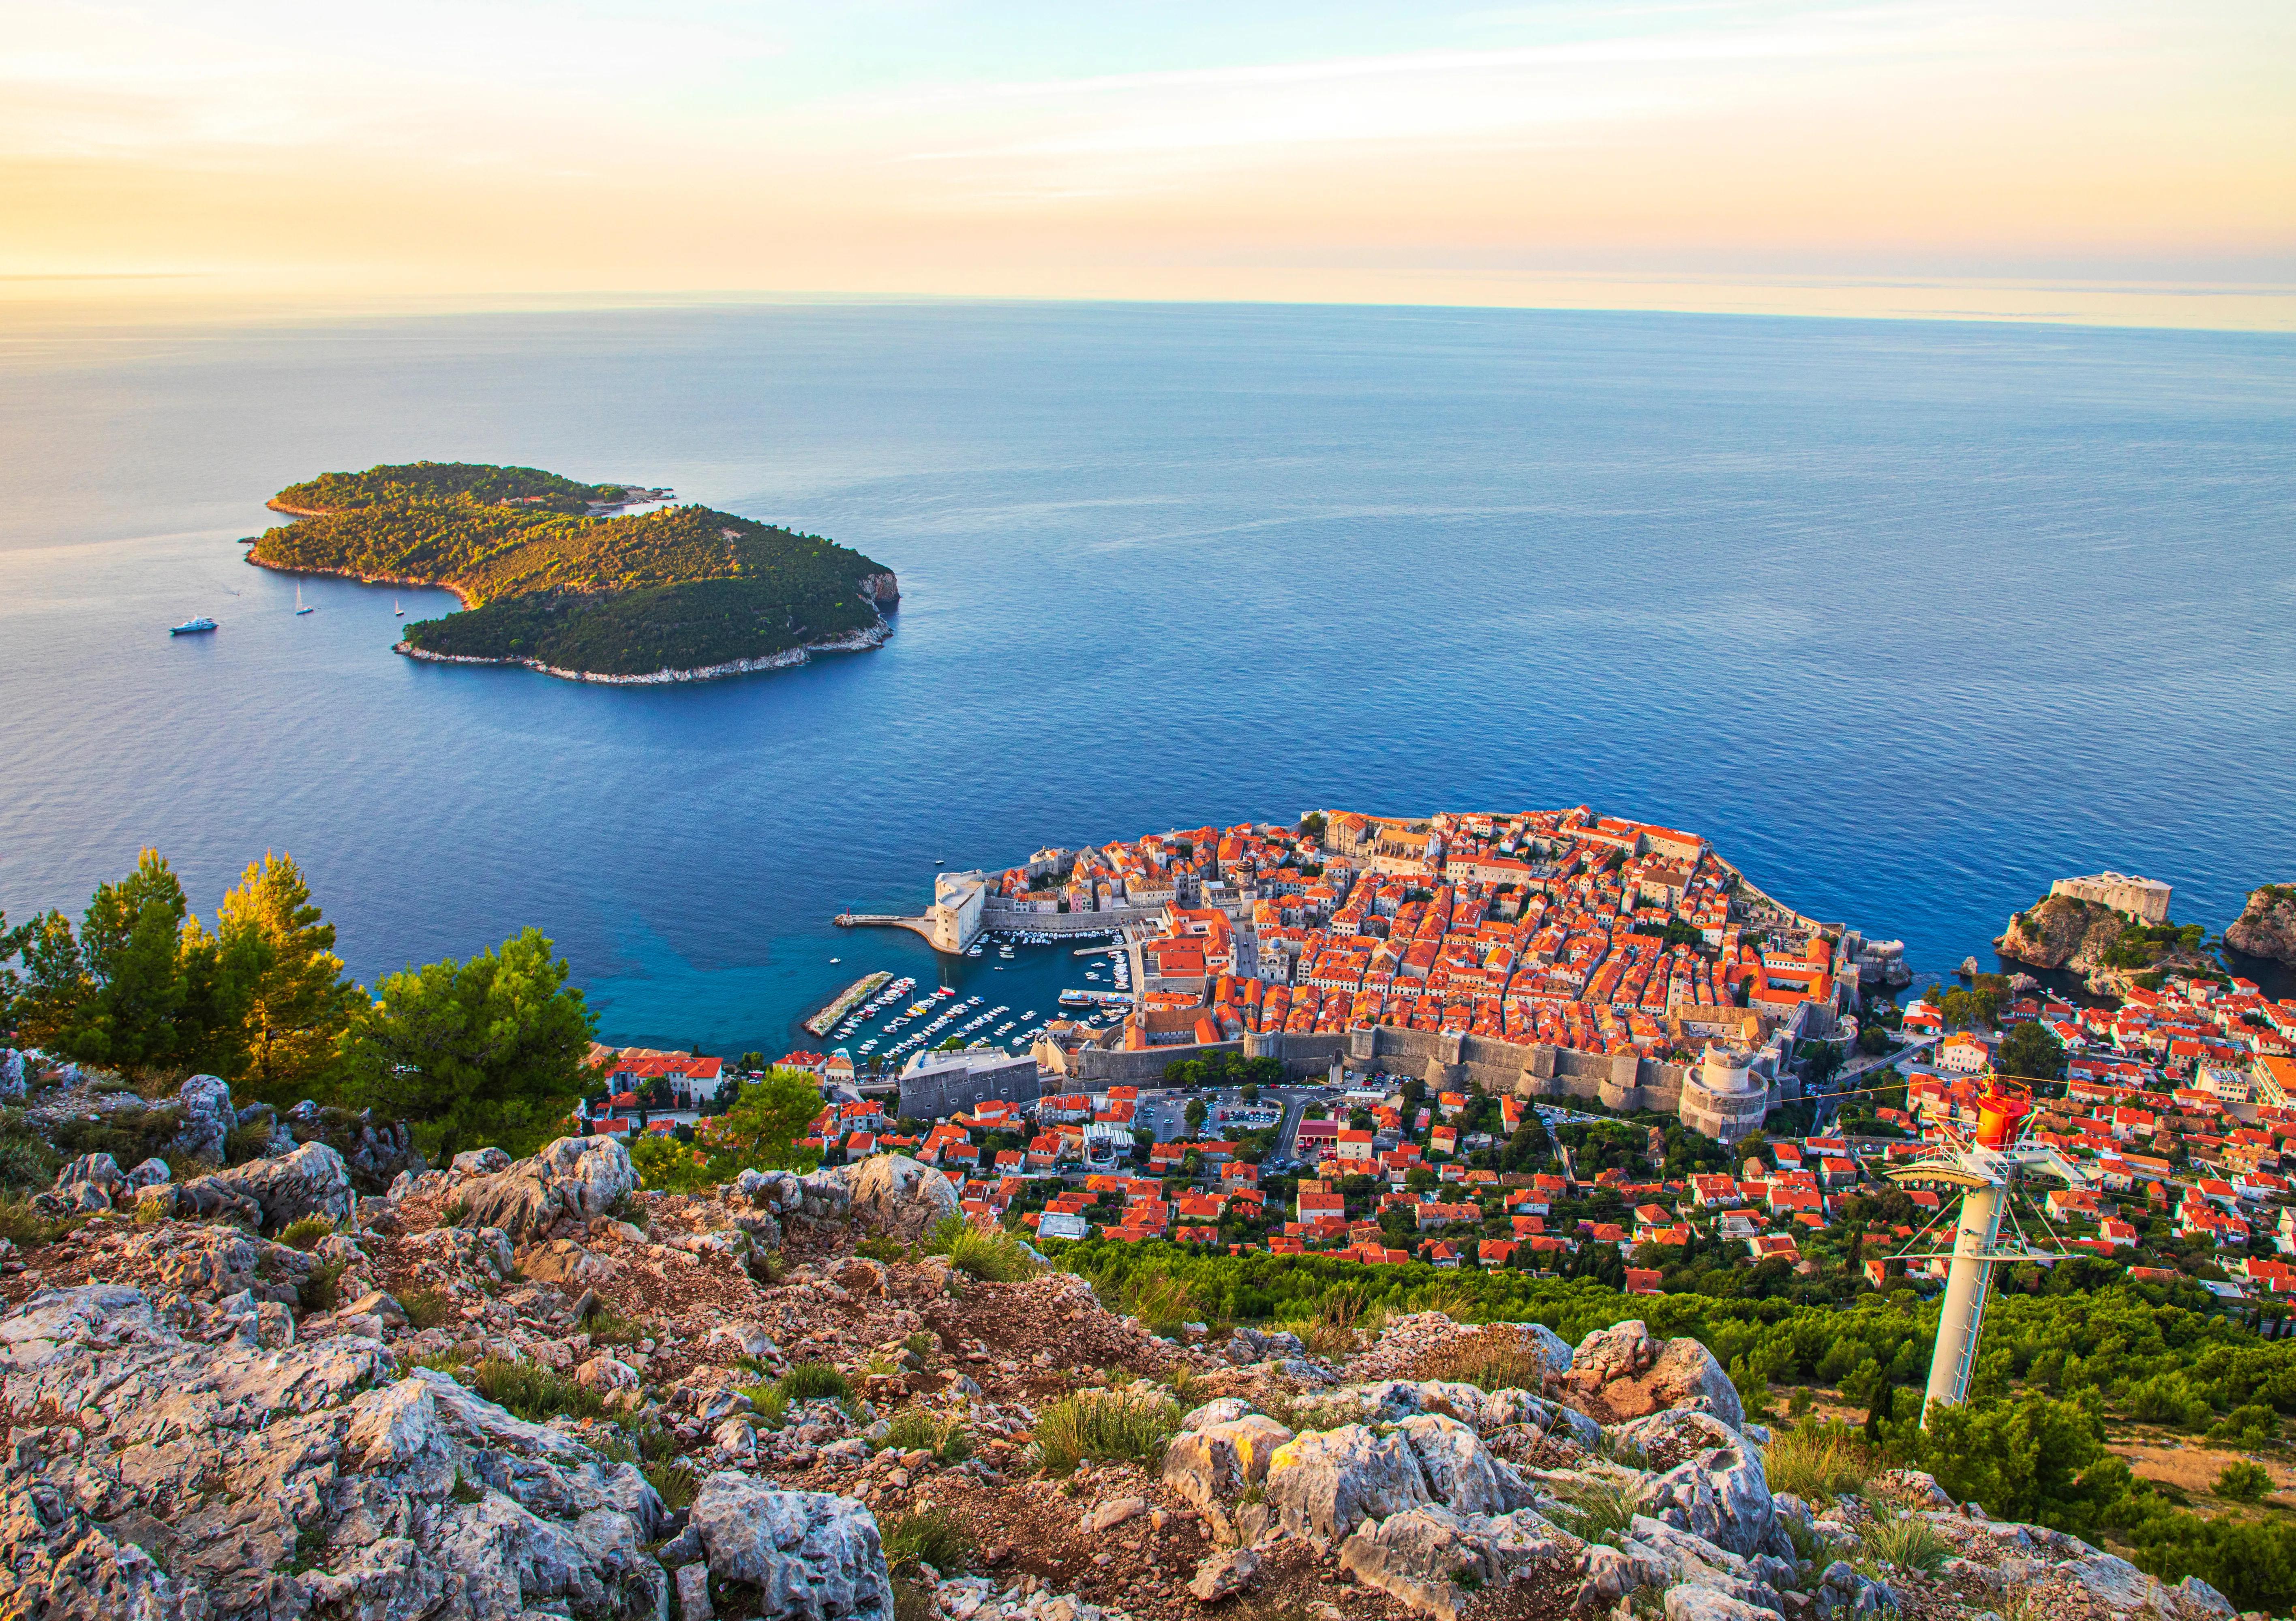 Dubrovnik en Croatie